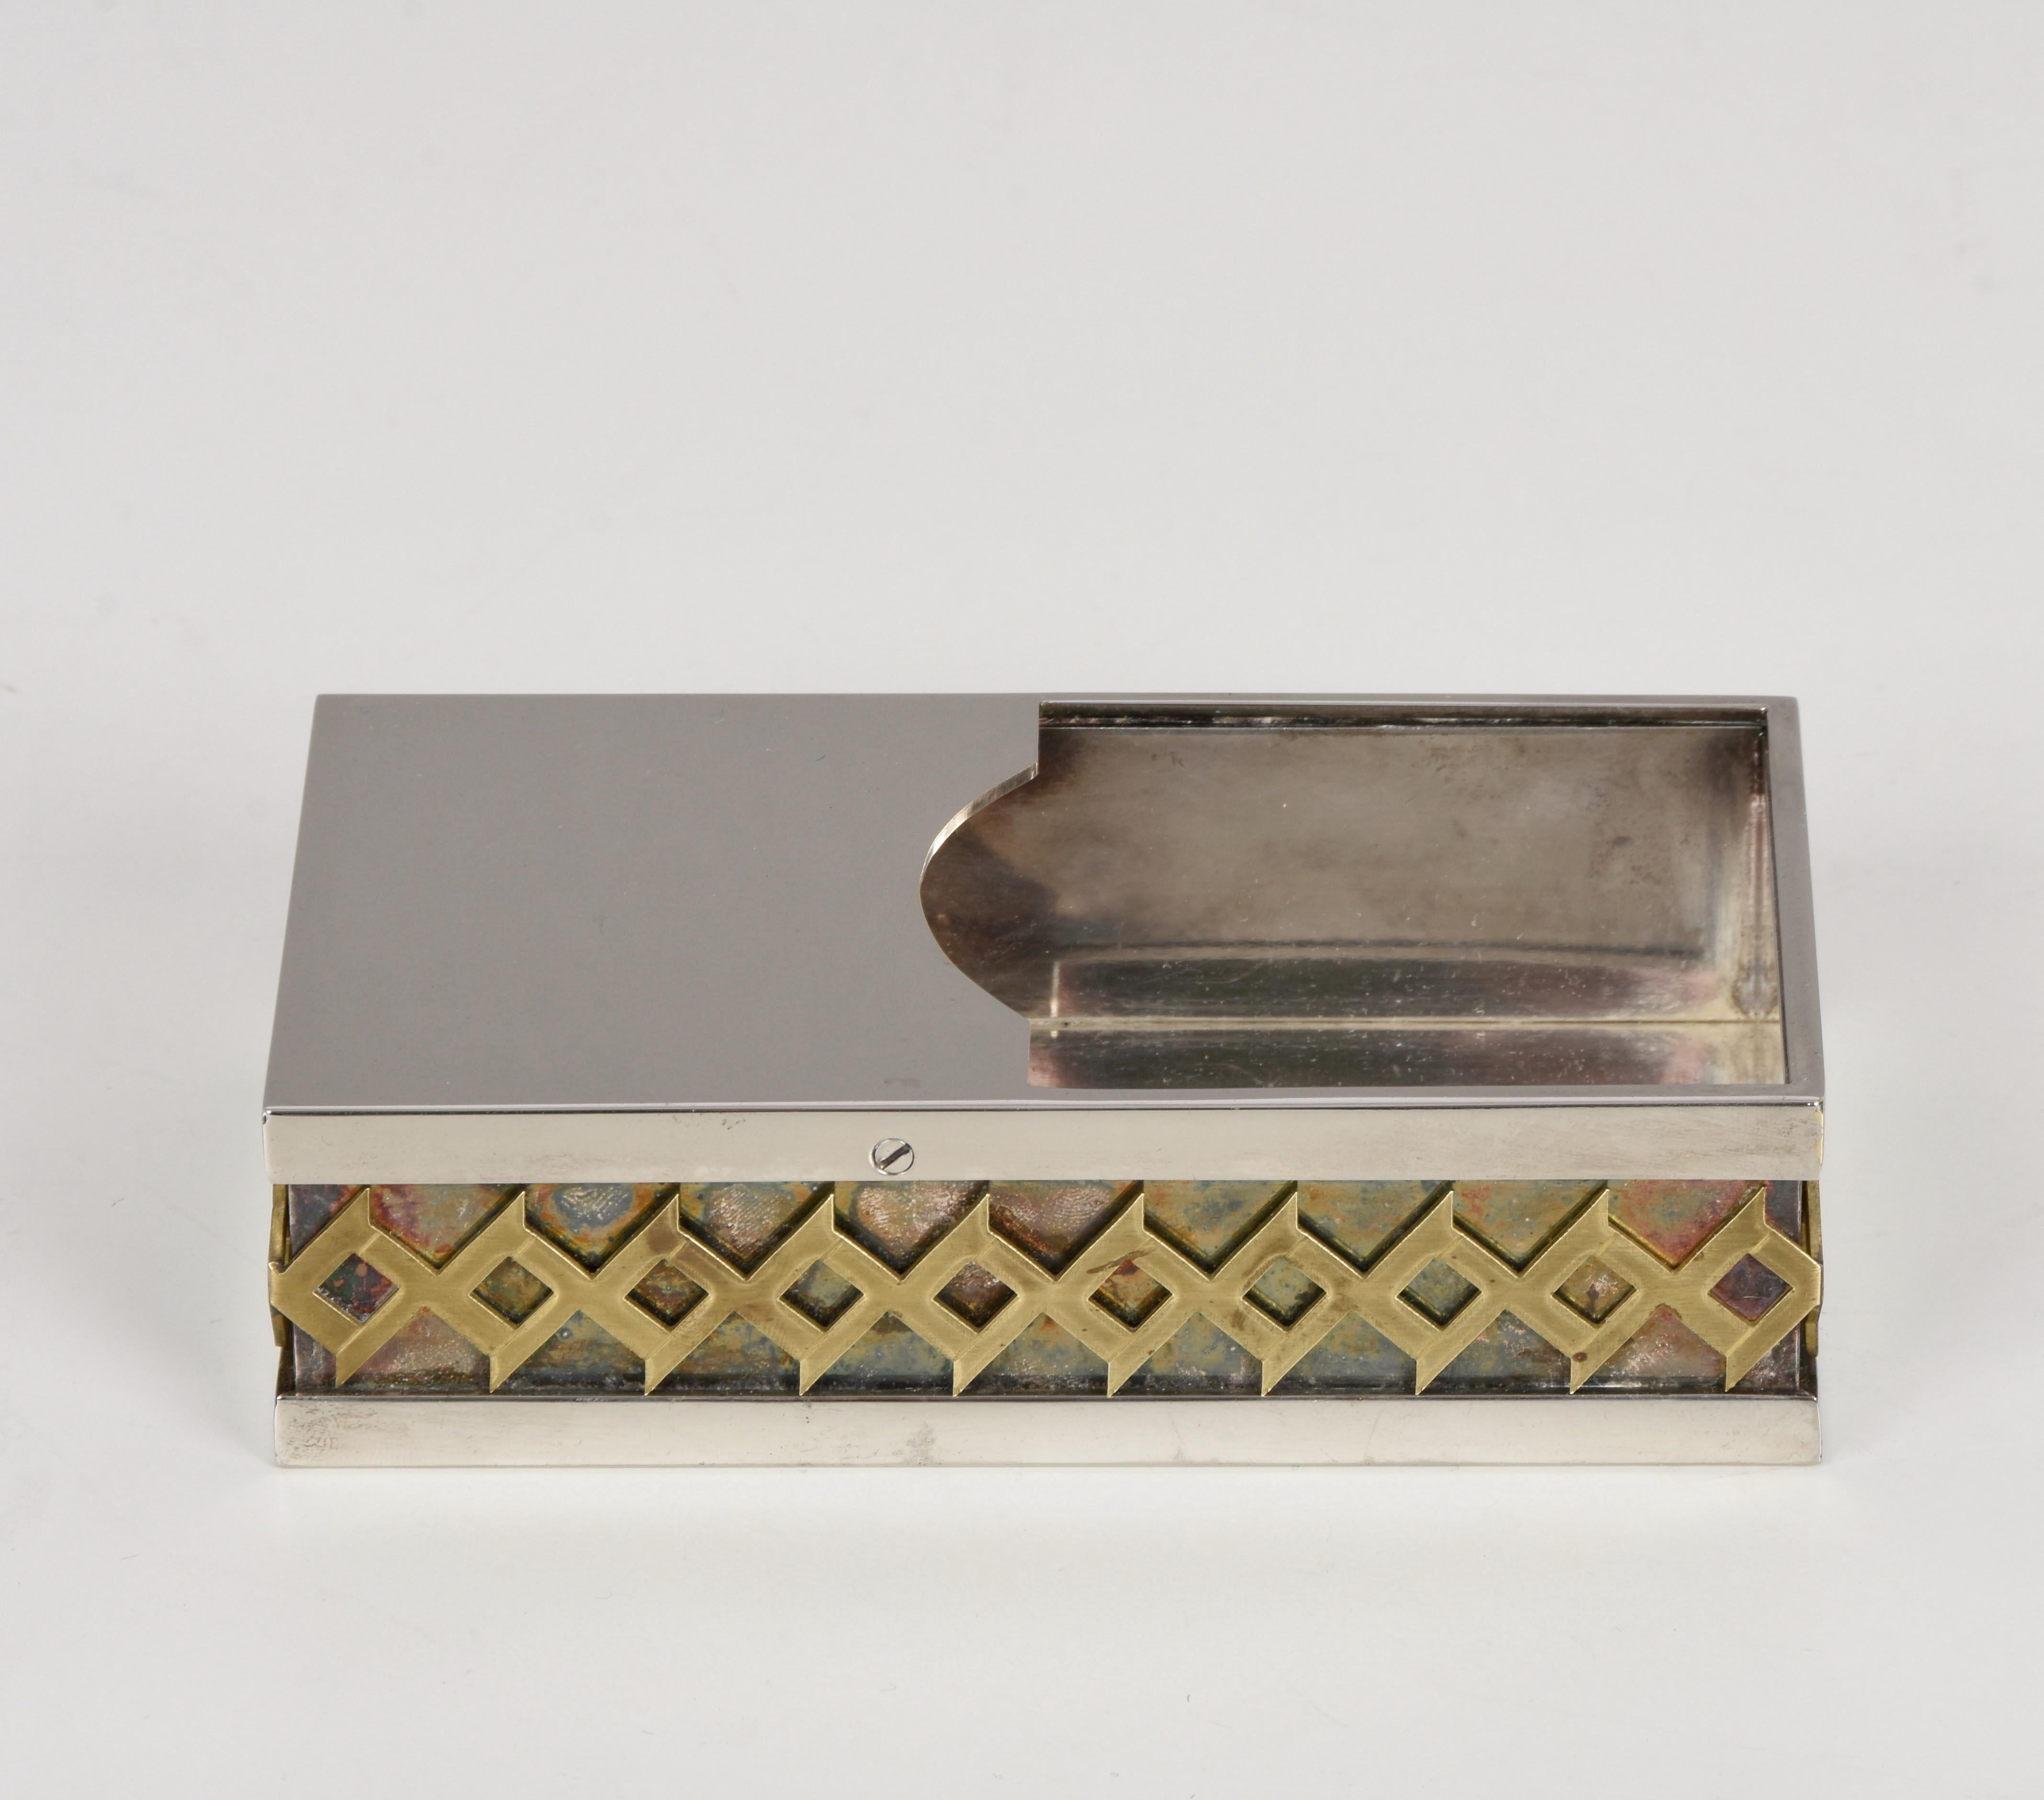 Elegant box midcentury silver plate decorative box. Cette magnifique pièce a été conçue en Italie dans les années 1970 par Benaglia pour Cleto Munari.

La combinaison magistrale de la plaque d'argent et du laiton doré, associée à des lignes